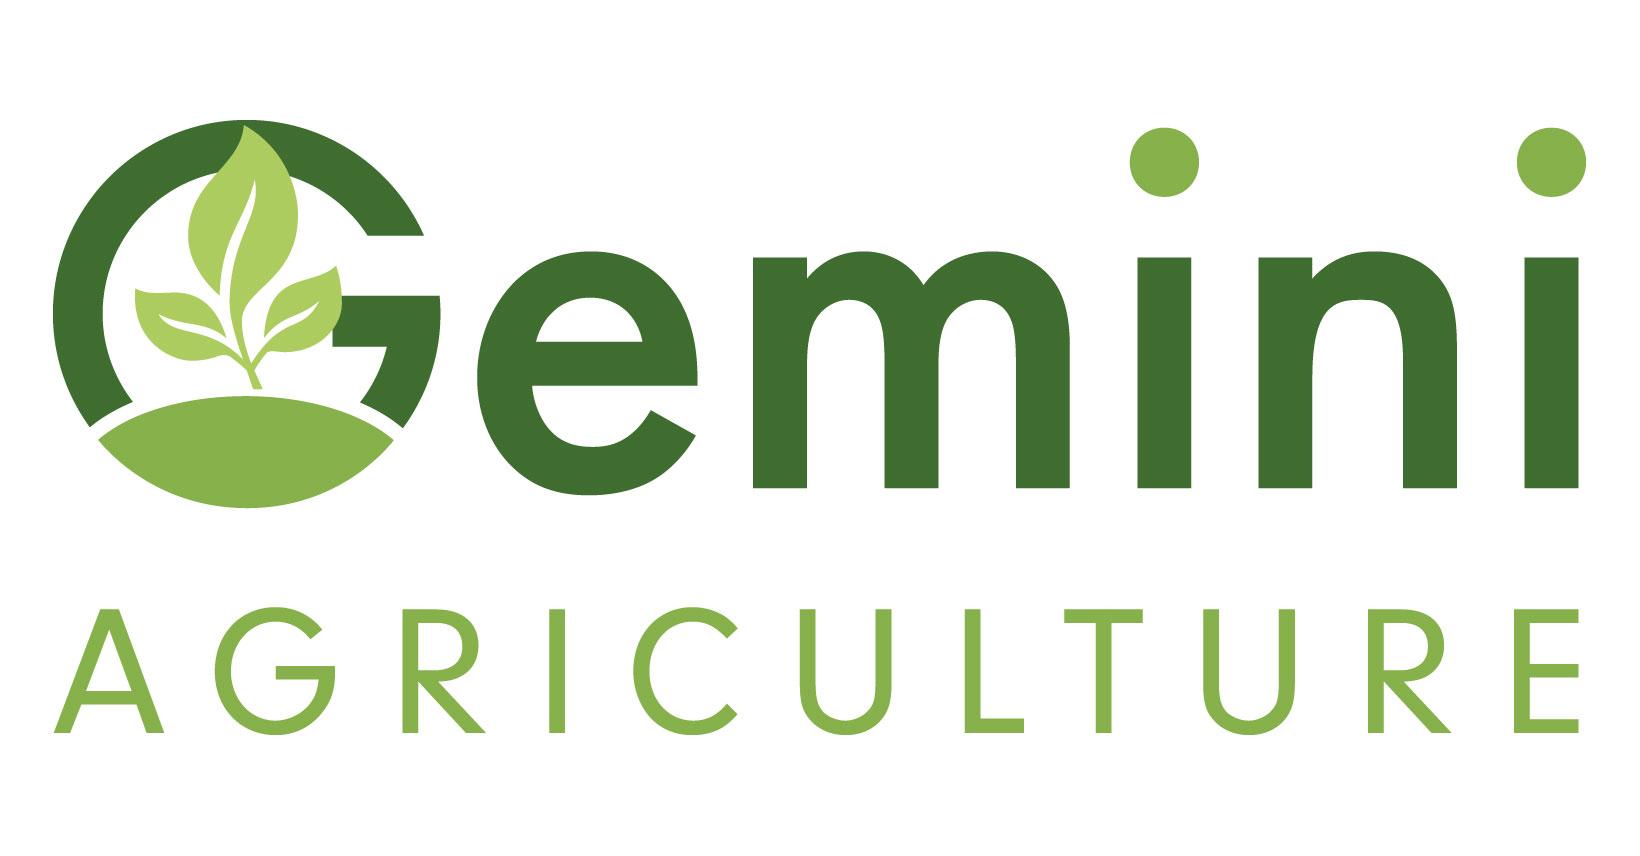 Product Cratus - Gemini Agriculture image